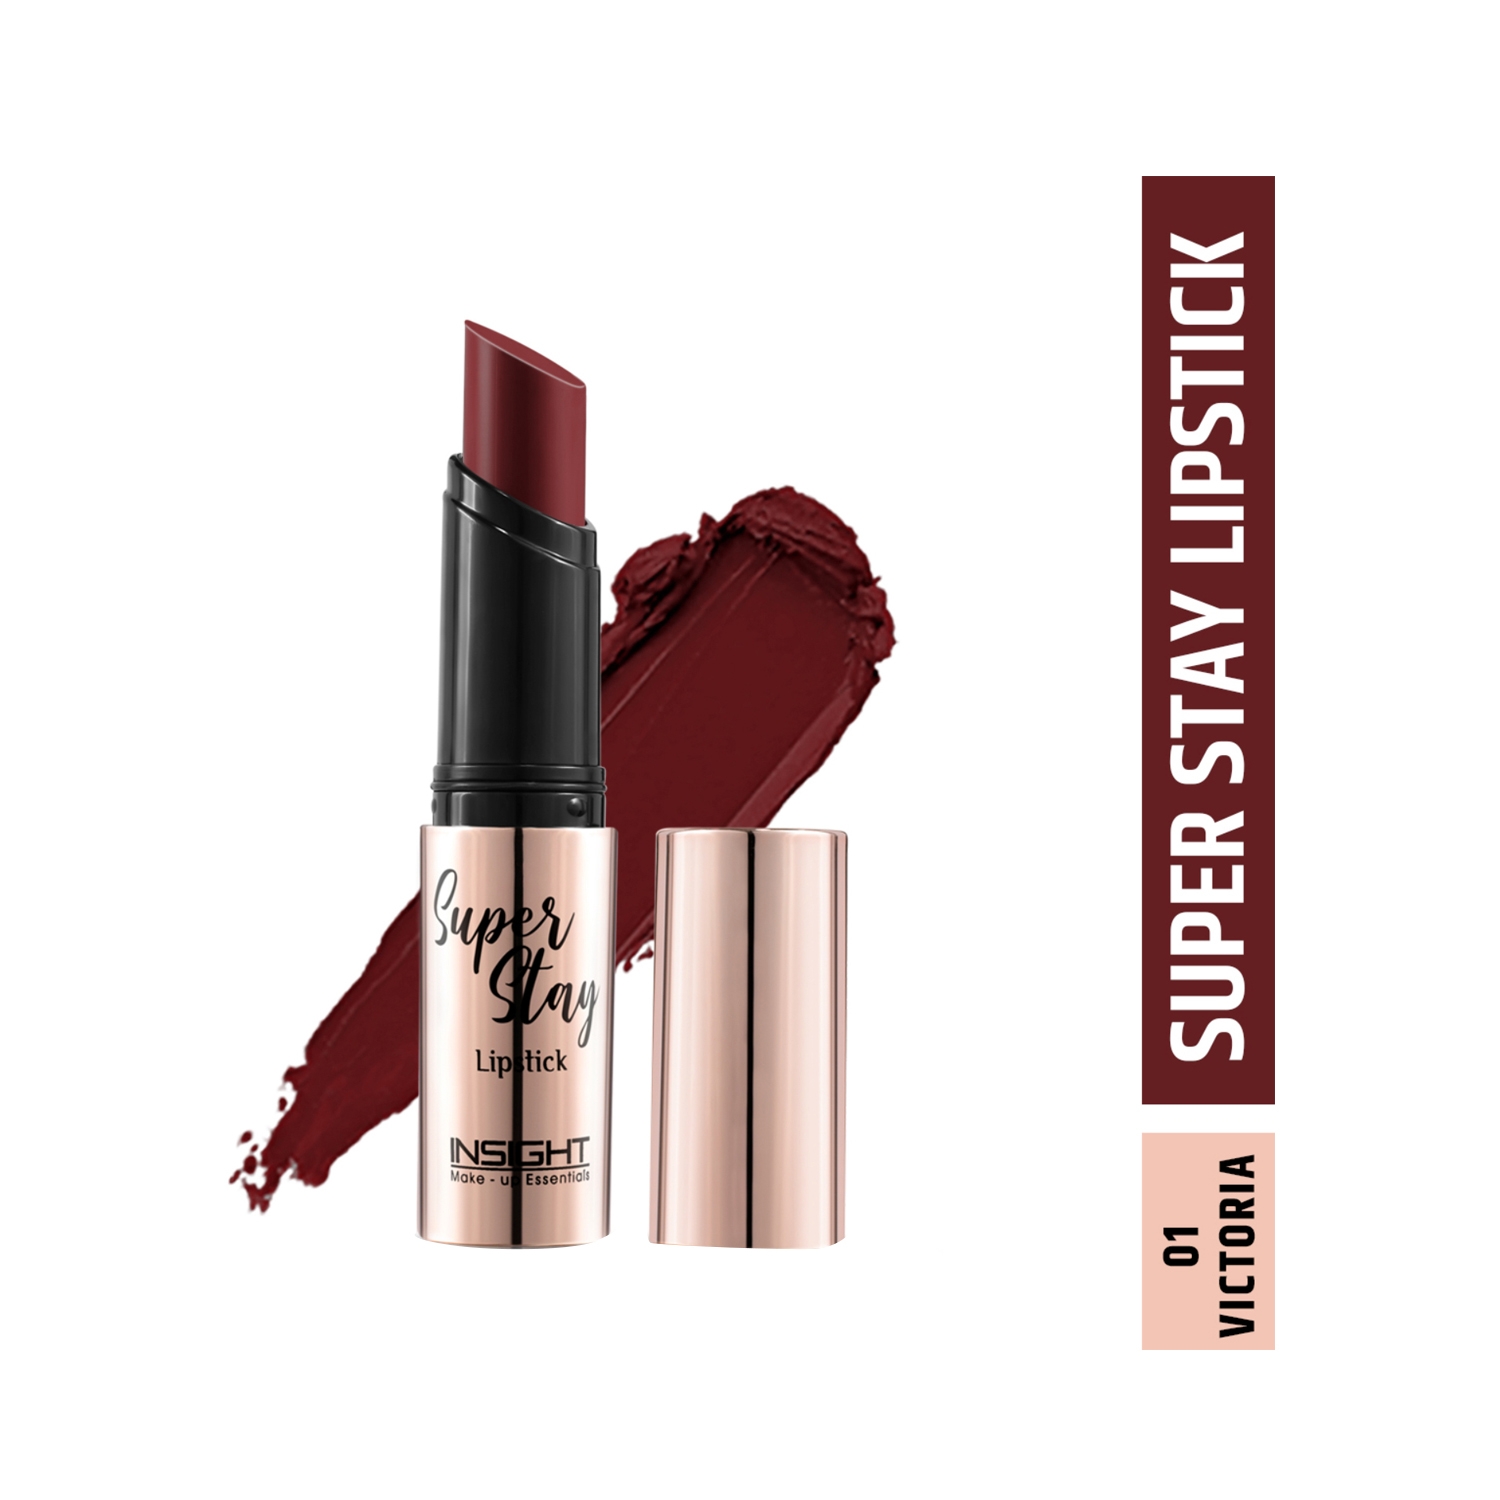 Insight Cosmetics Super Stay Lipstick - 01 Victoria (7g)